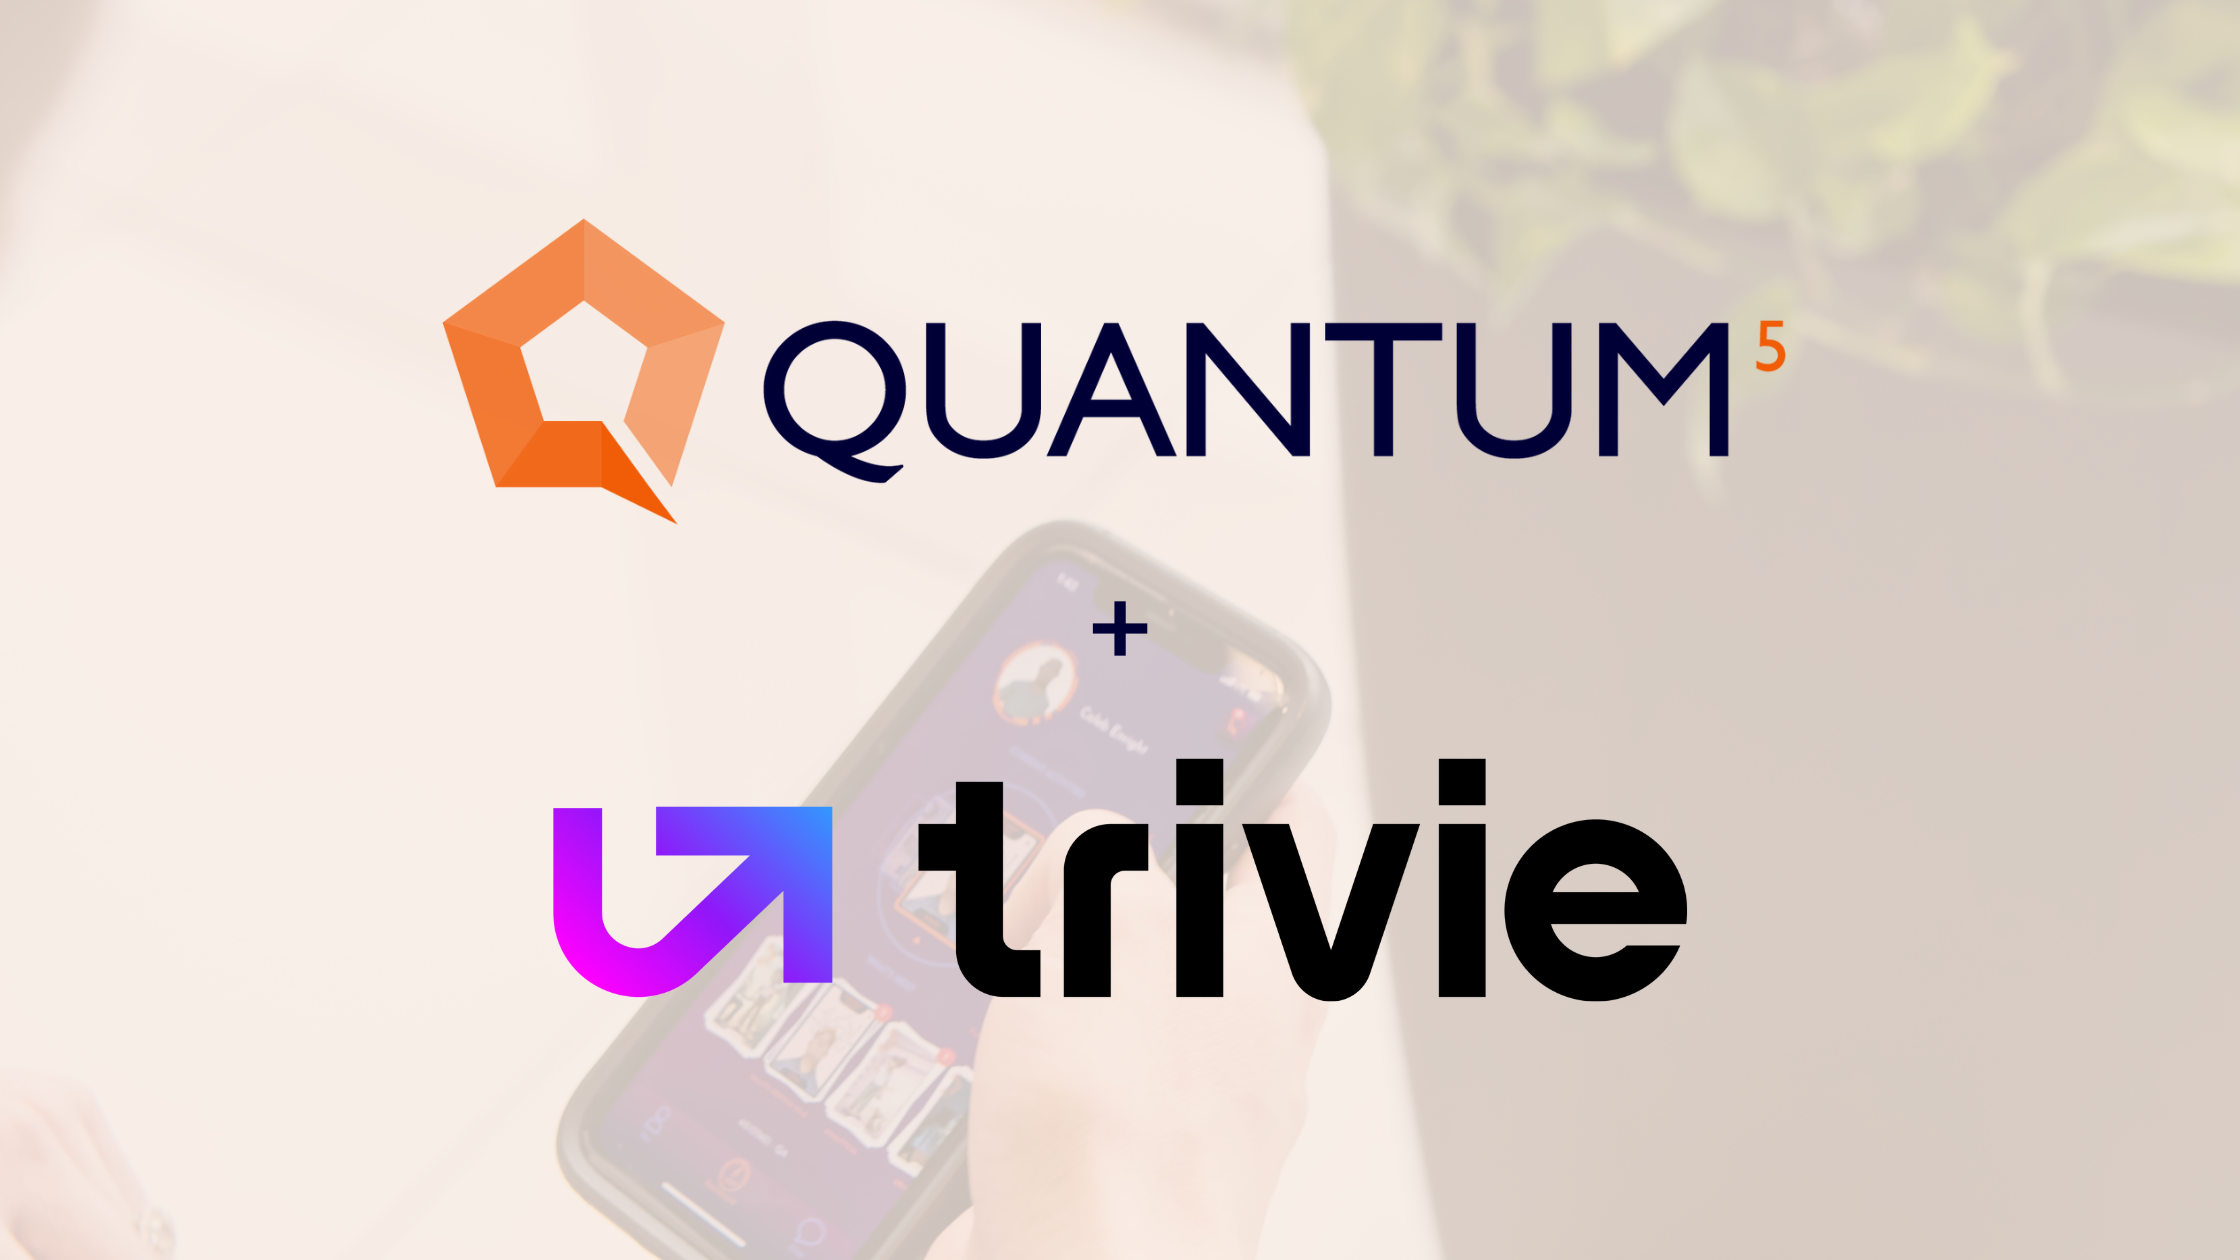 Quantum5 + Trivie